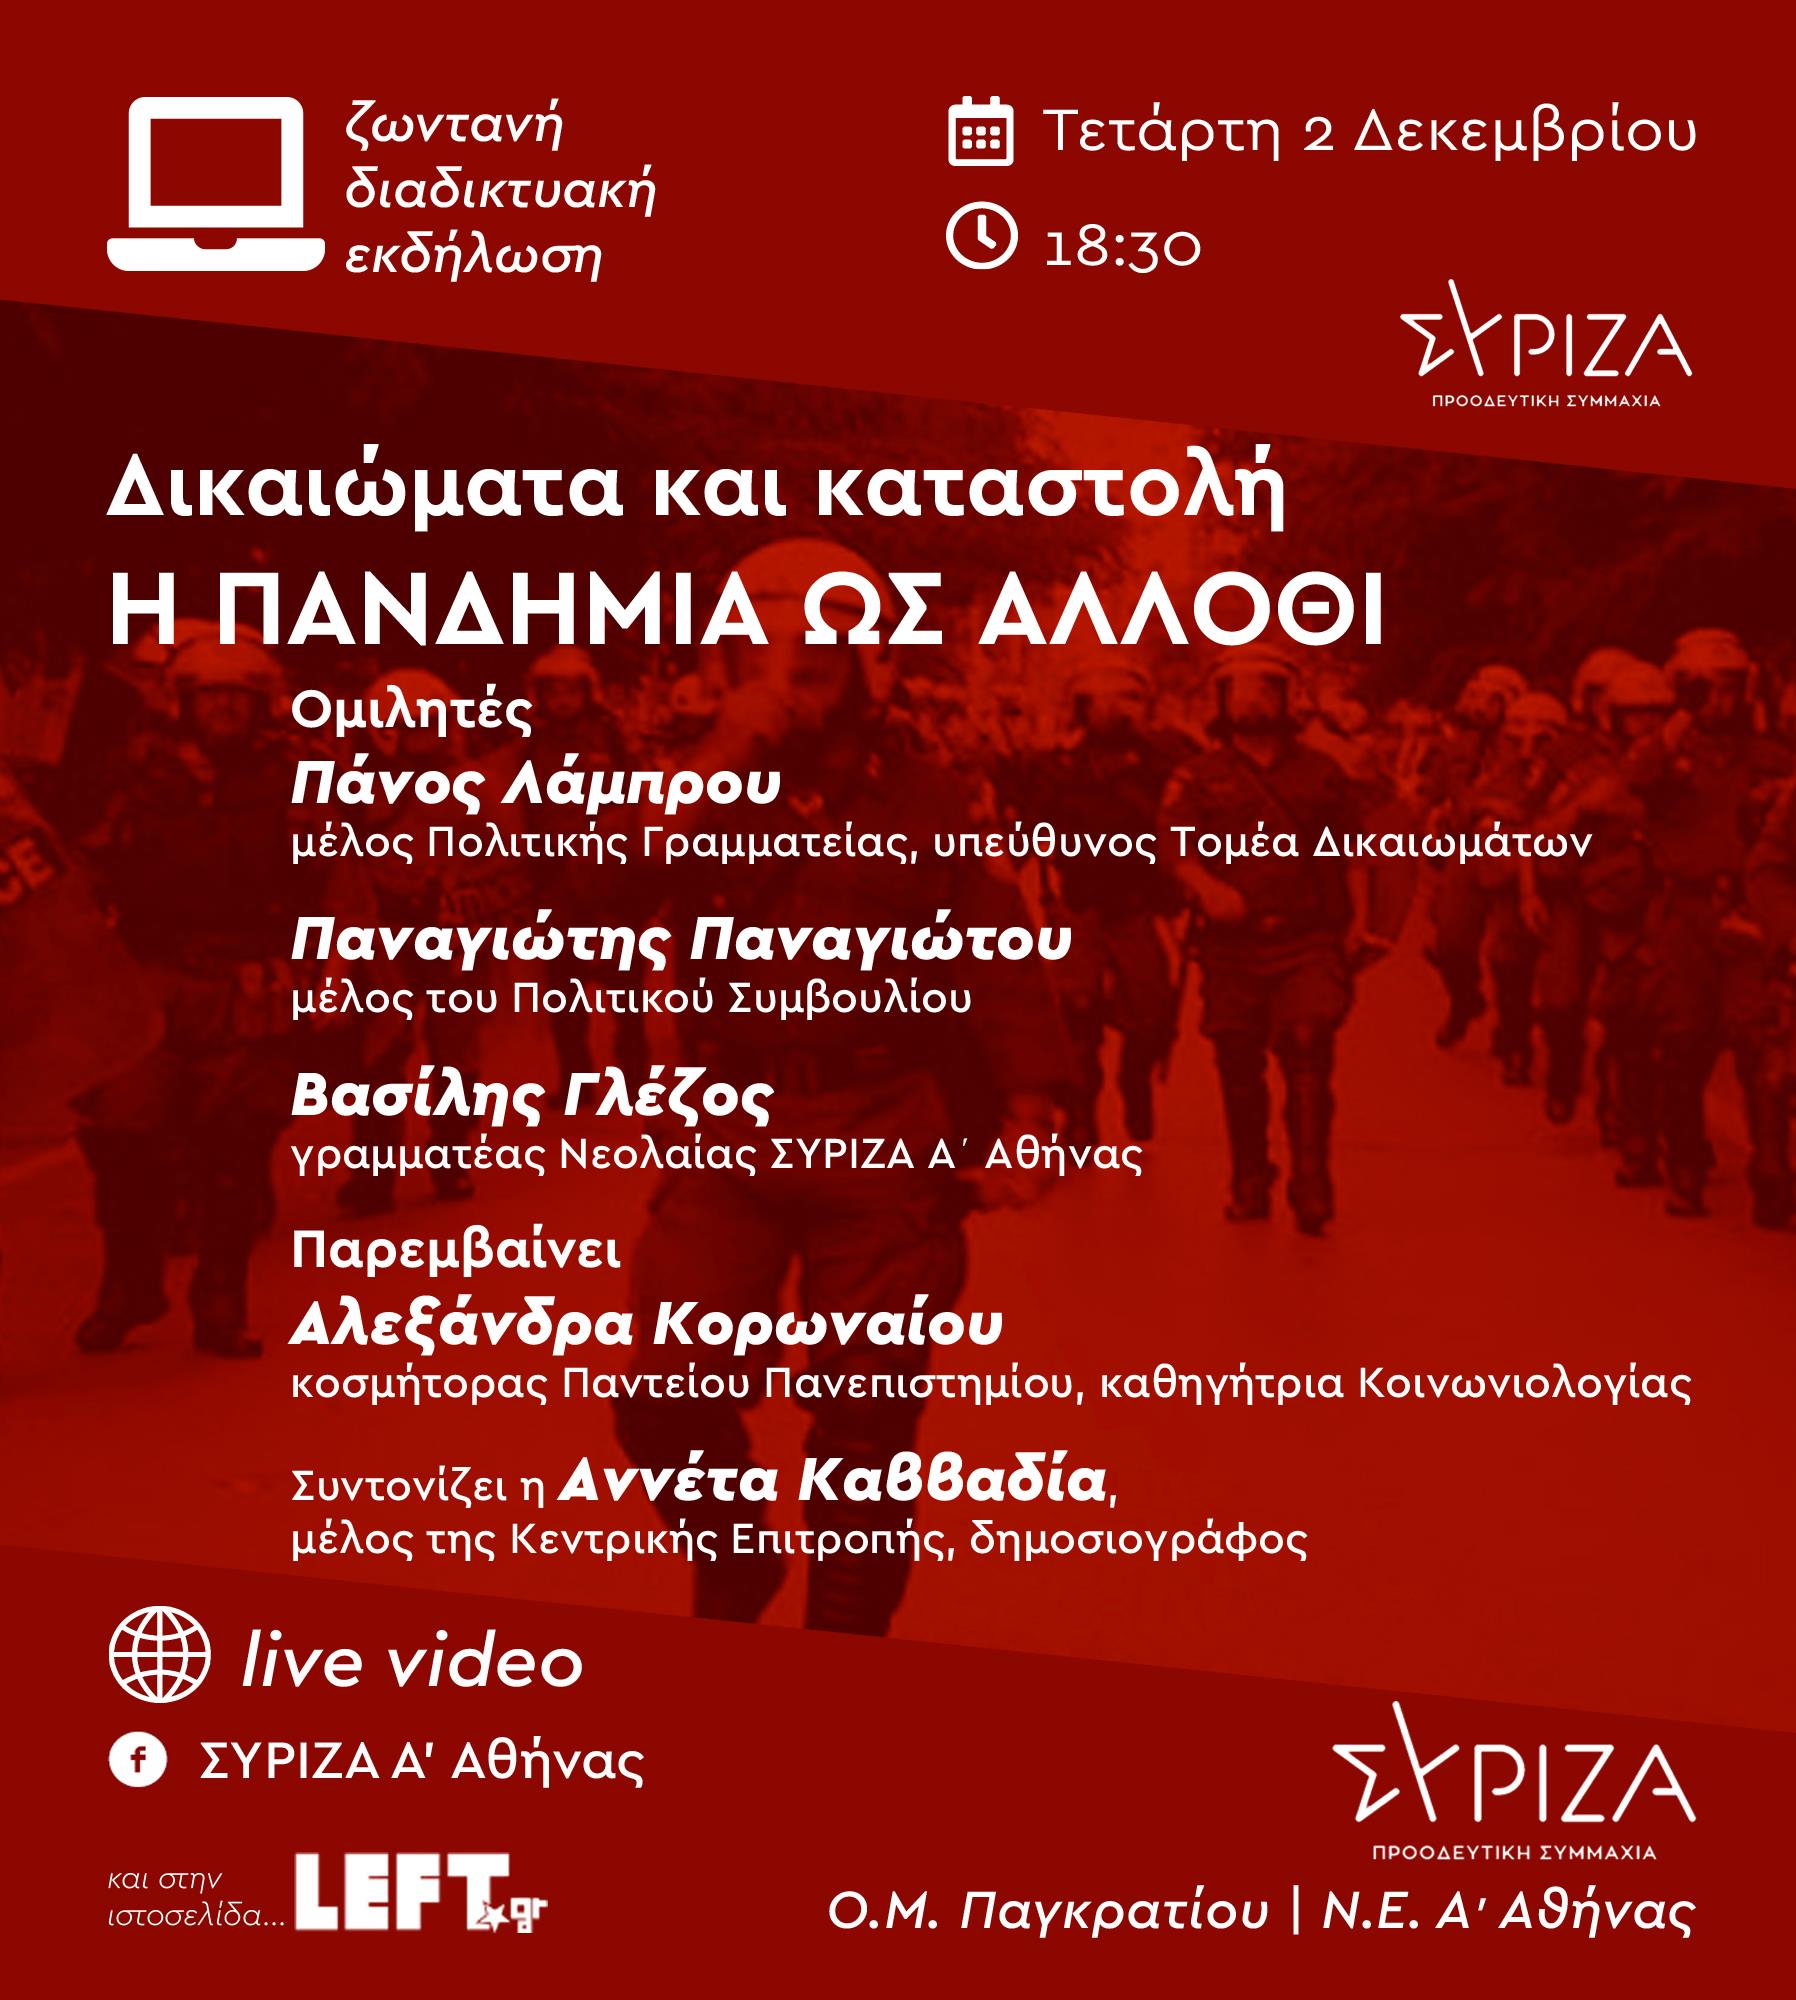 Εκδήλωση ΟΜ Παγκρατίου και ΝΕ Α΄Αθήνας του ΣΥΡΙΖΑ - Προοδευτική Συμμαχία: «Δικαιώματα και καταστολή: Η πανδημία ως άλλοθι», Τετάρτη 2 Δεκεμβρίου